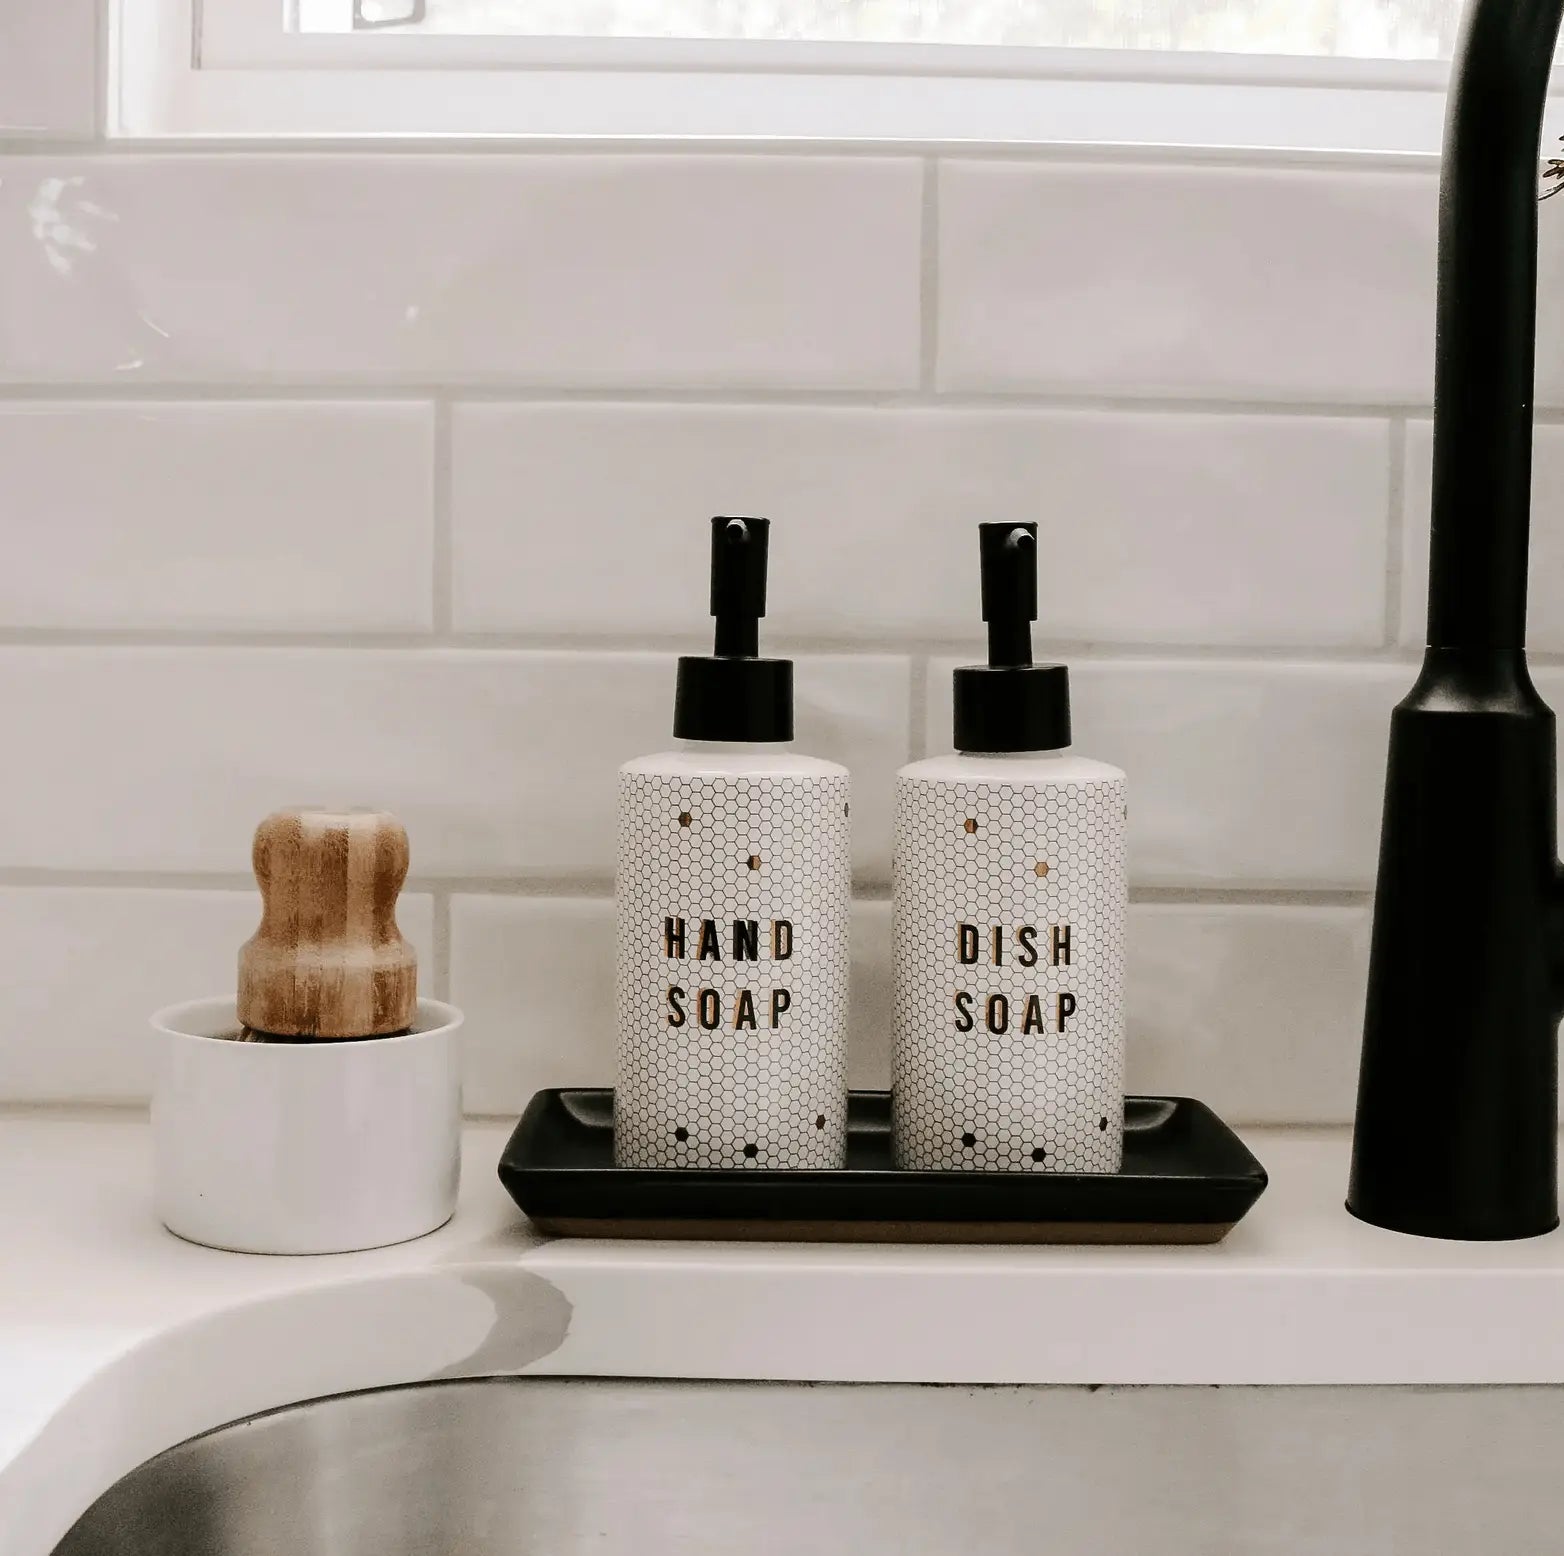 Sweet Water Decor 8.5oz Tile Hand Soap Dispenser - White